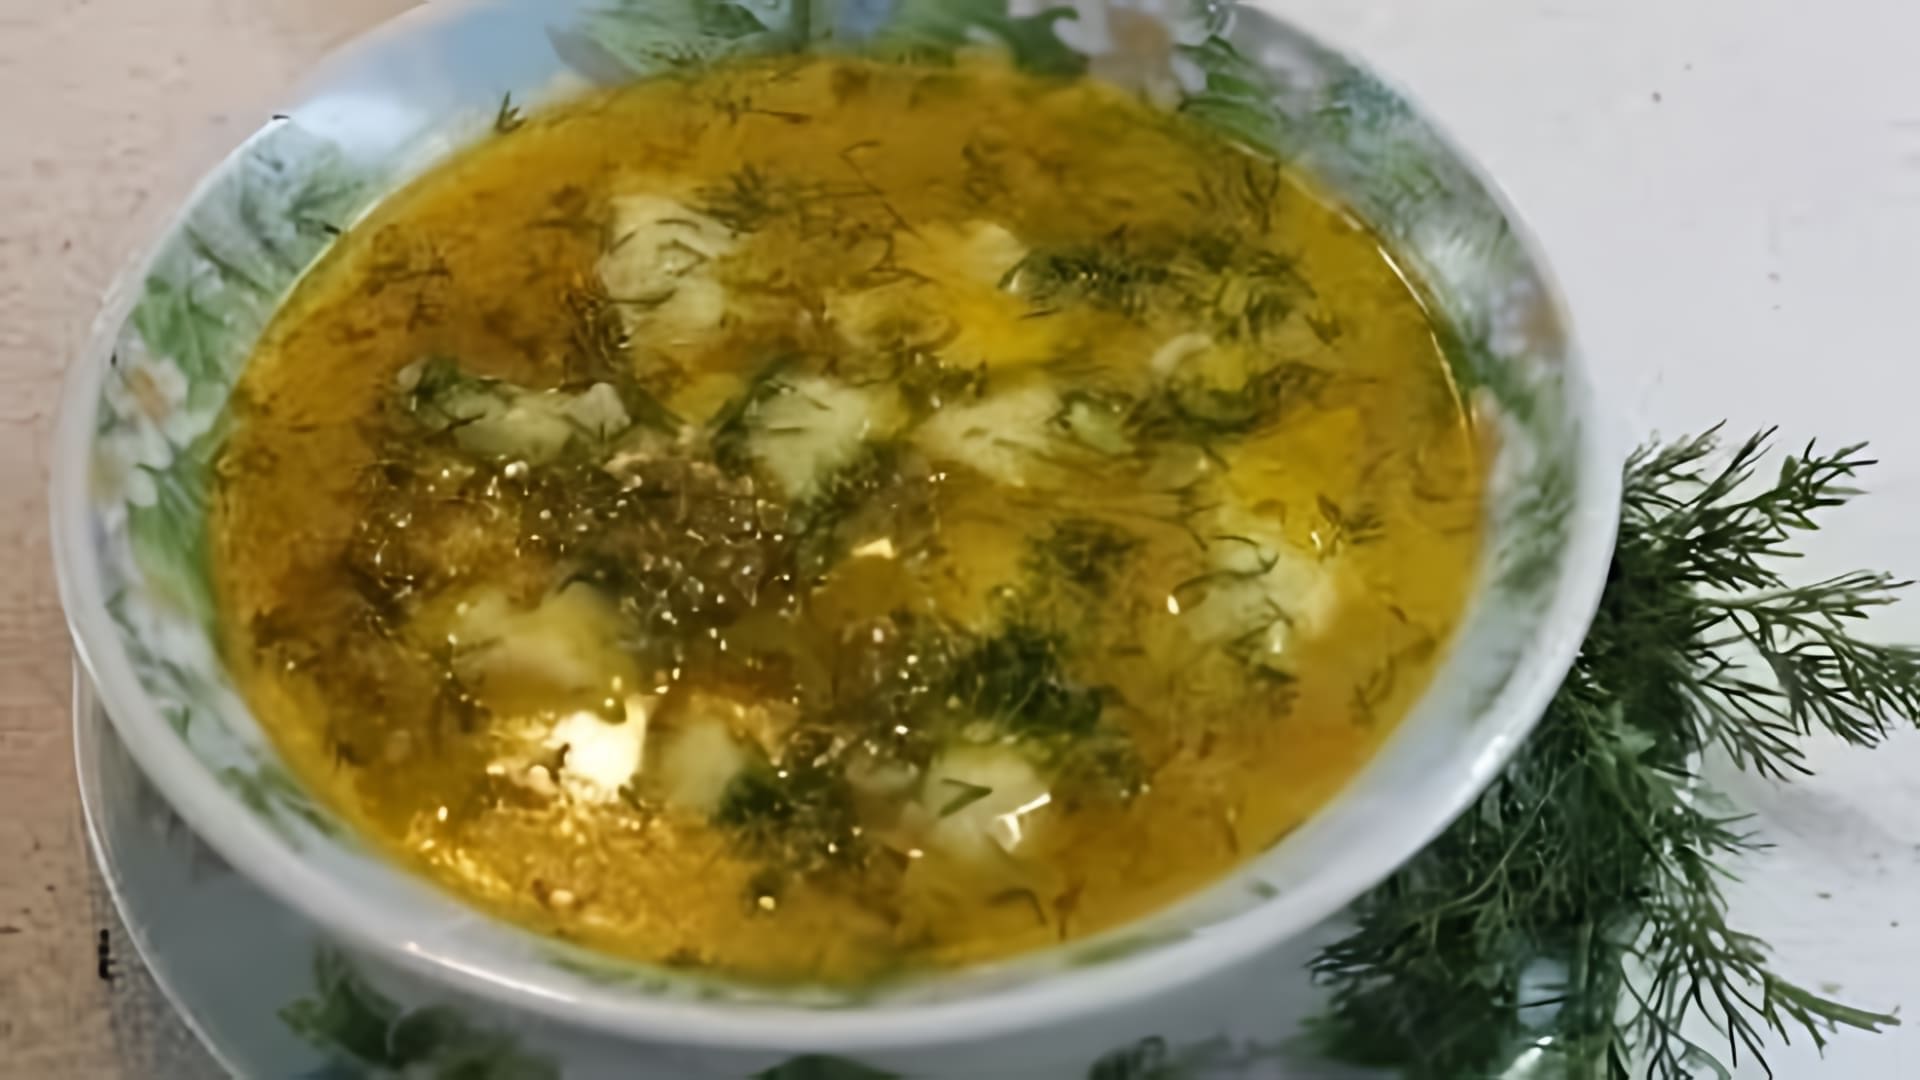 В этом видео демонстрируется процесс приготовления постного супа с галушками или клецками